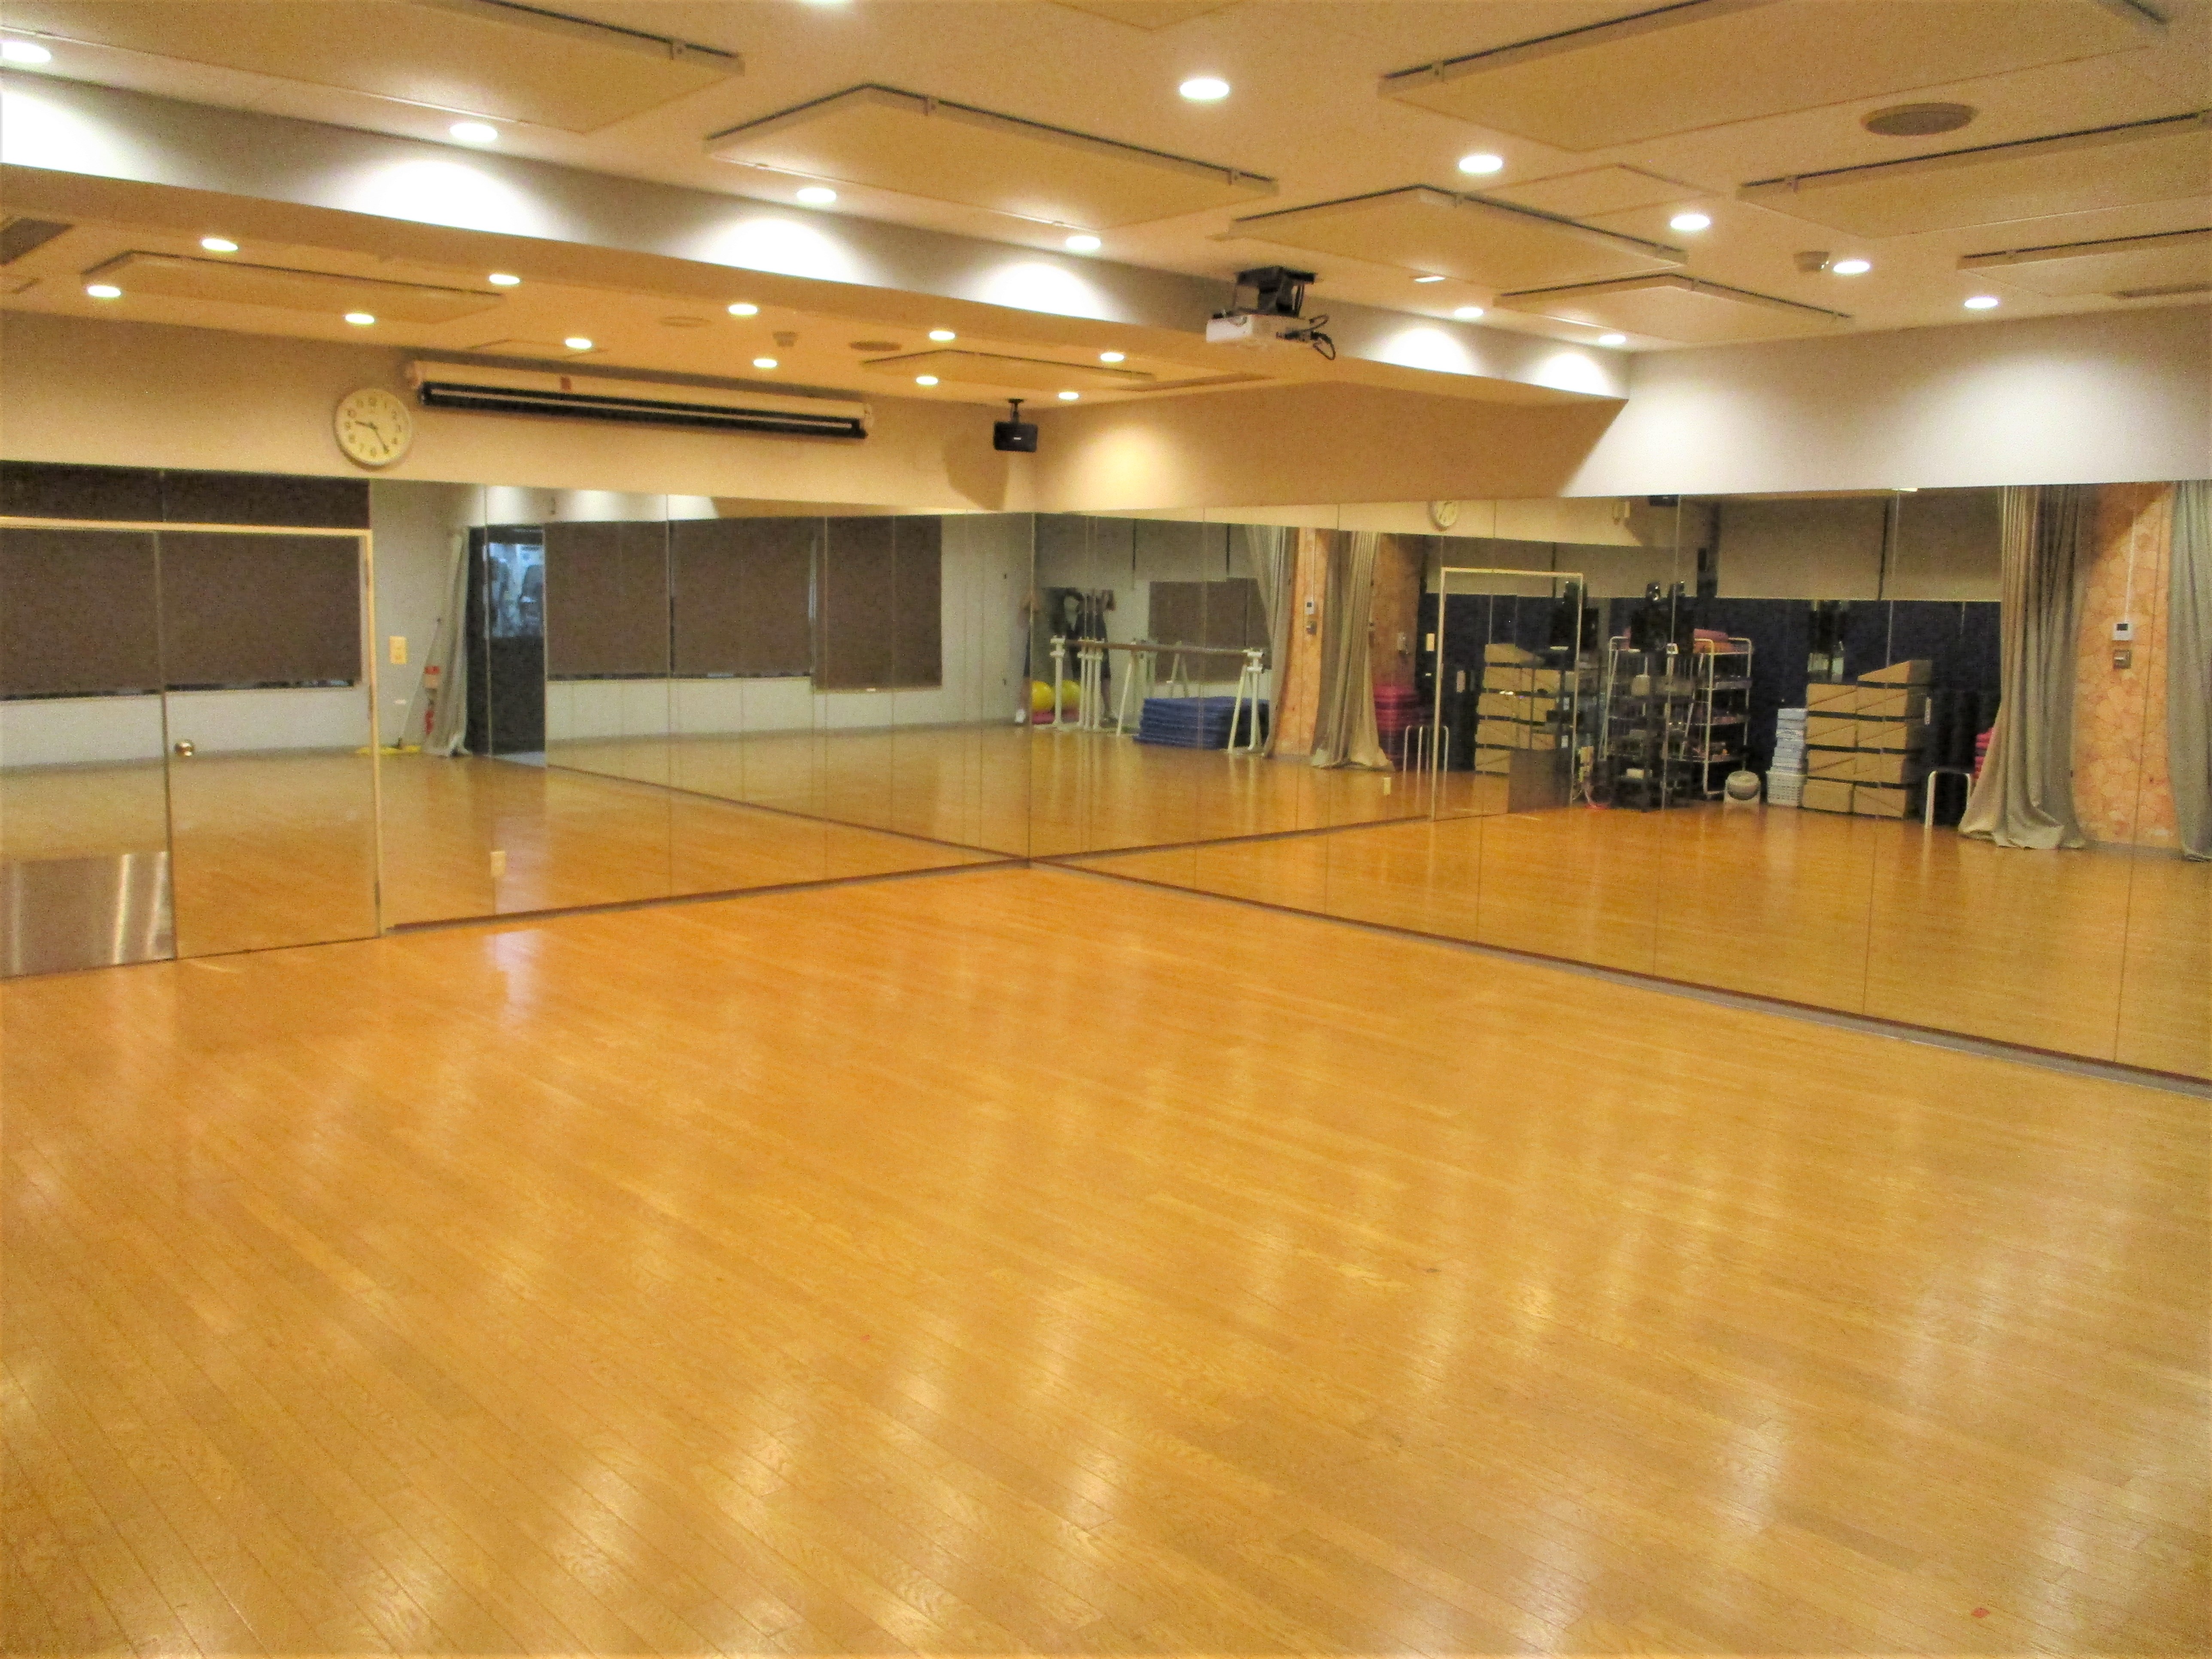 【ダンススタジオ】鏡を見ながら楽しく踊る練習をします